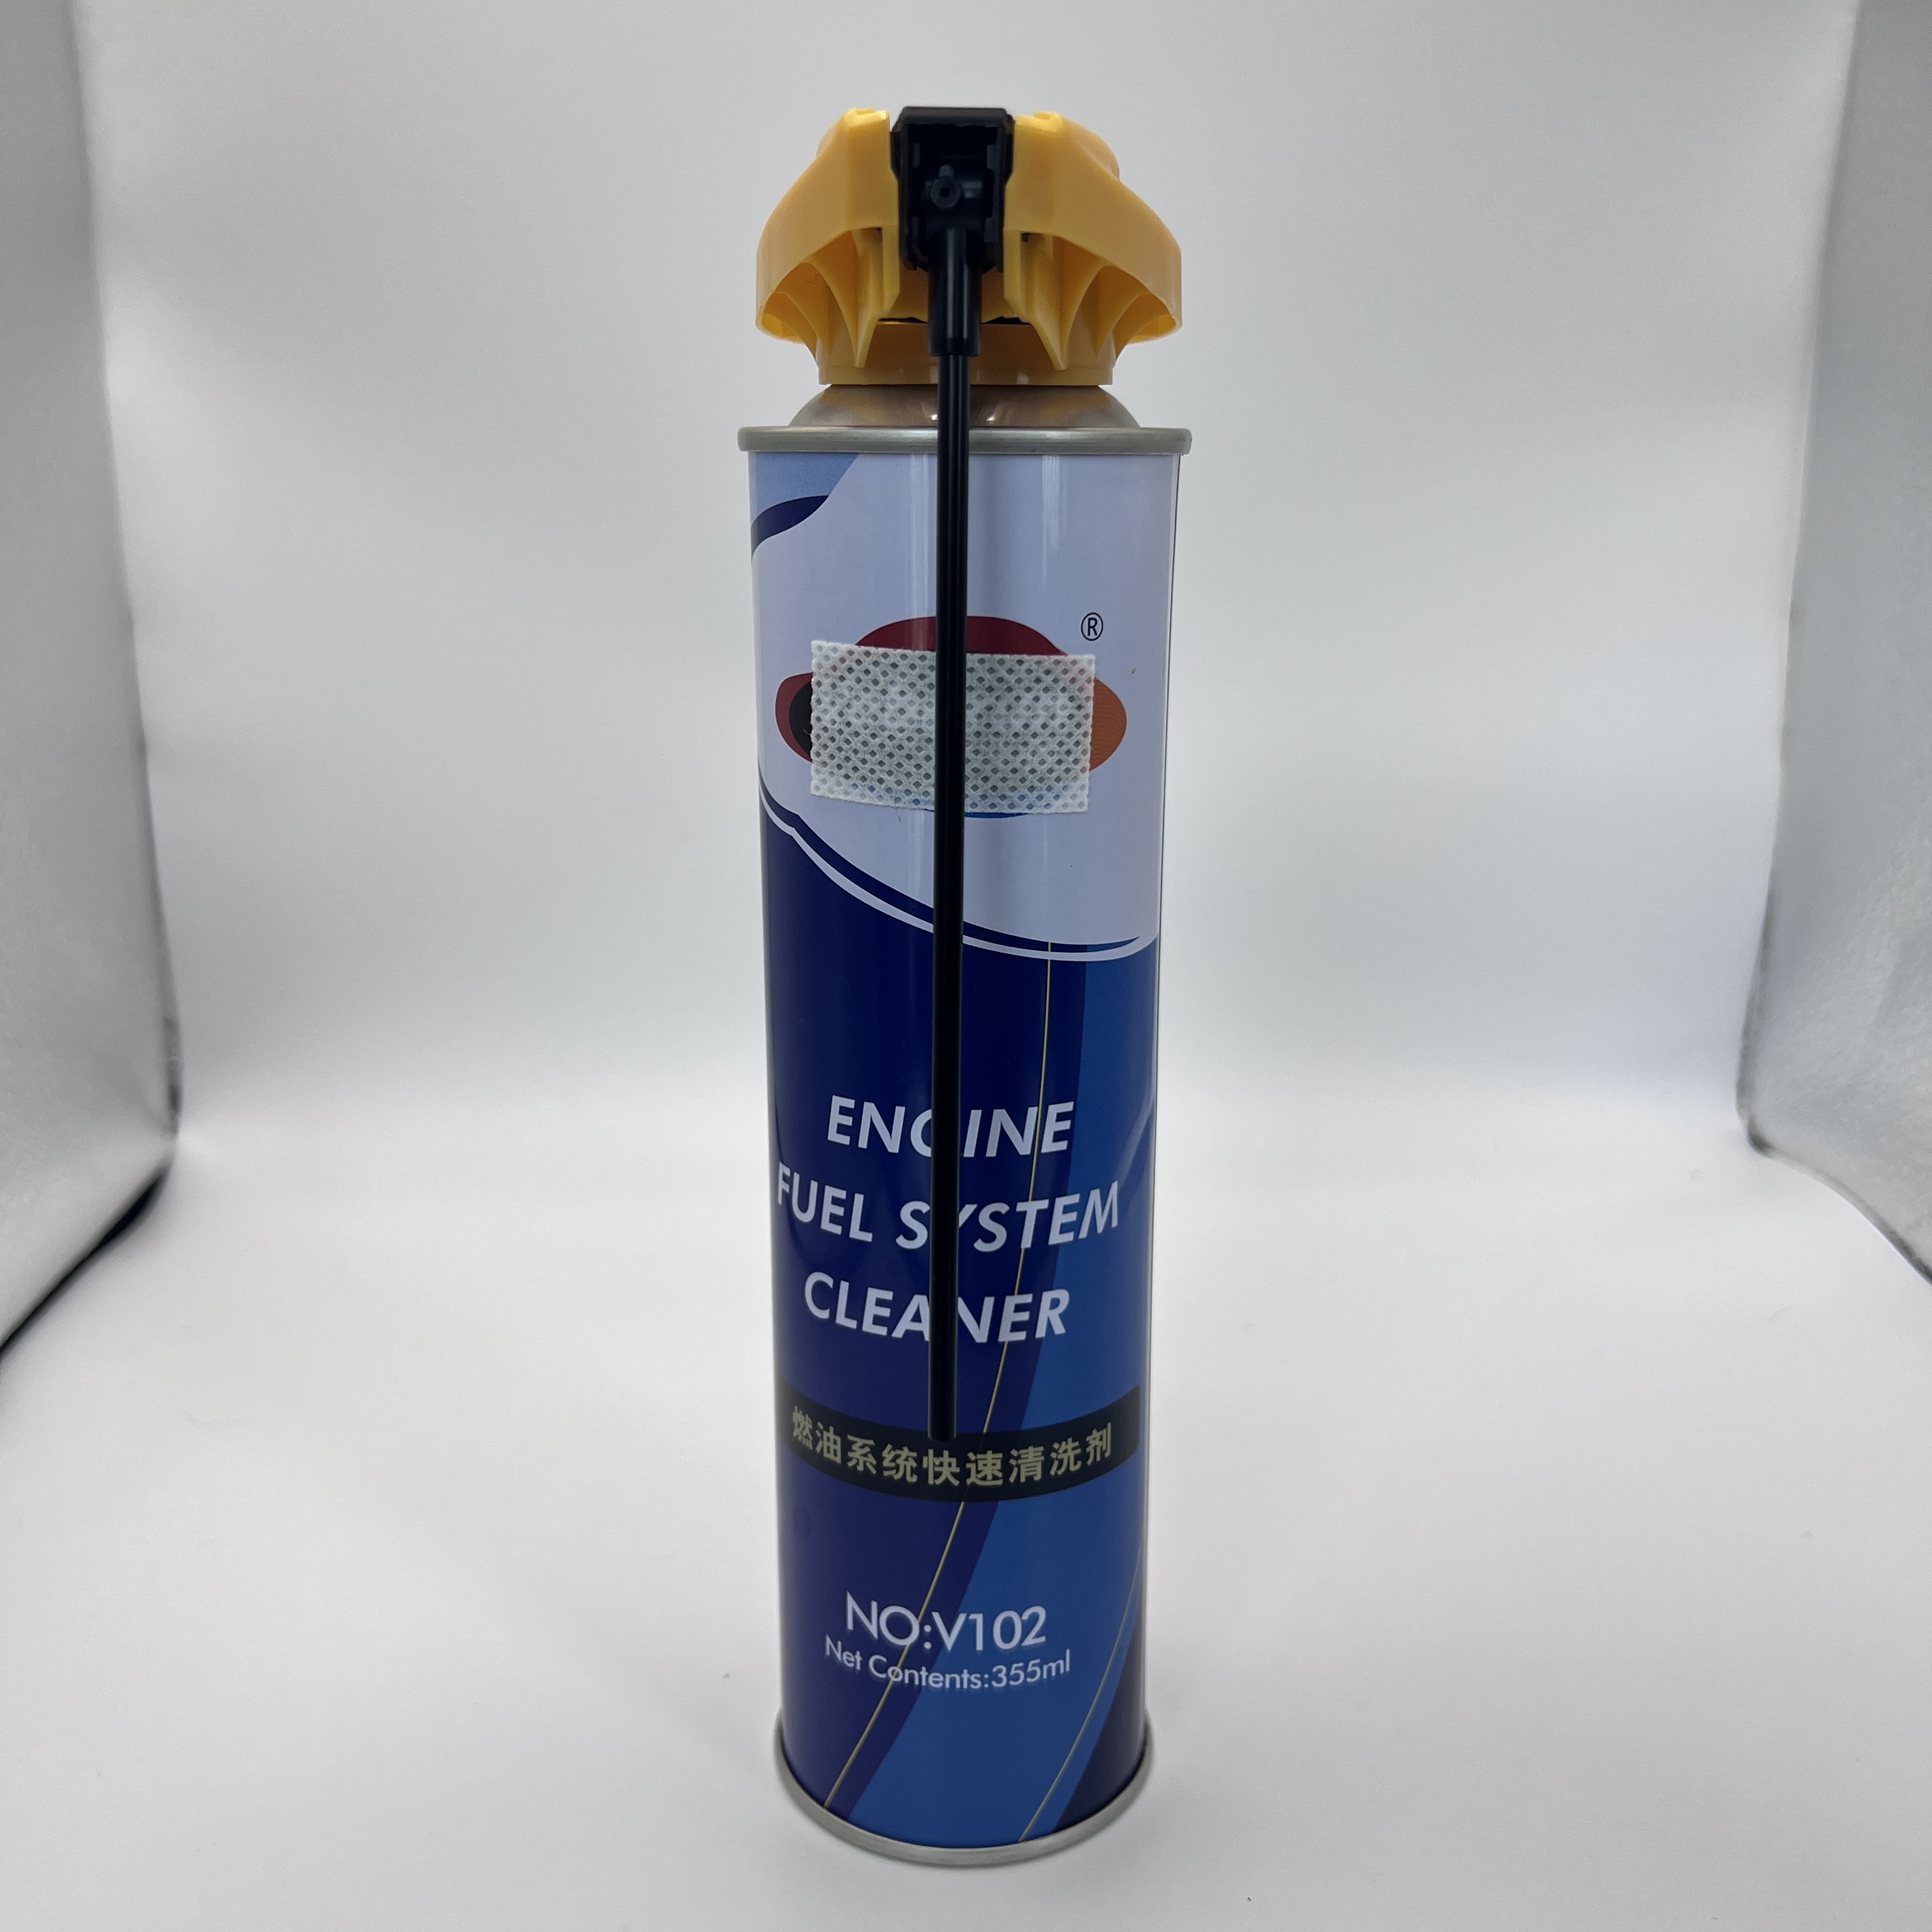 Alat Pengisian Ulang Kartrid Gas Butana Serbaguna - Solusi Isi Ulang Mudah untuk Kompor dan Pemantik Api Portabel